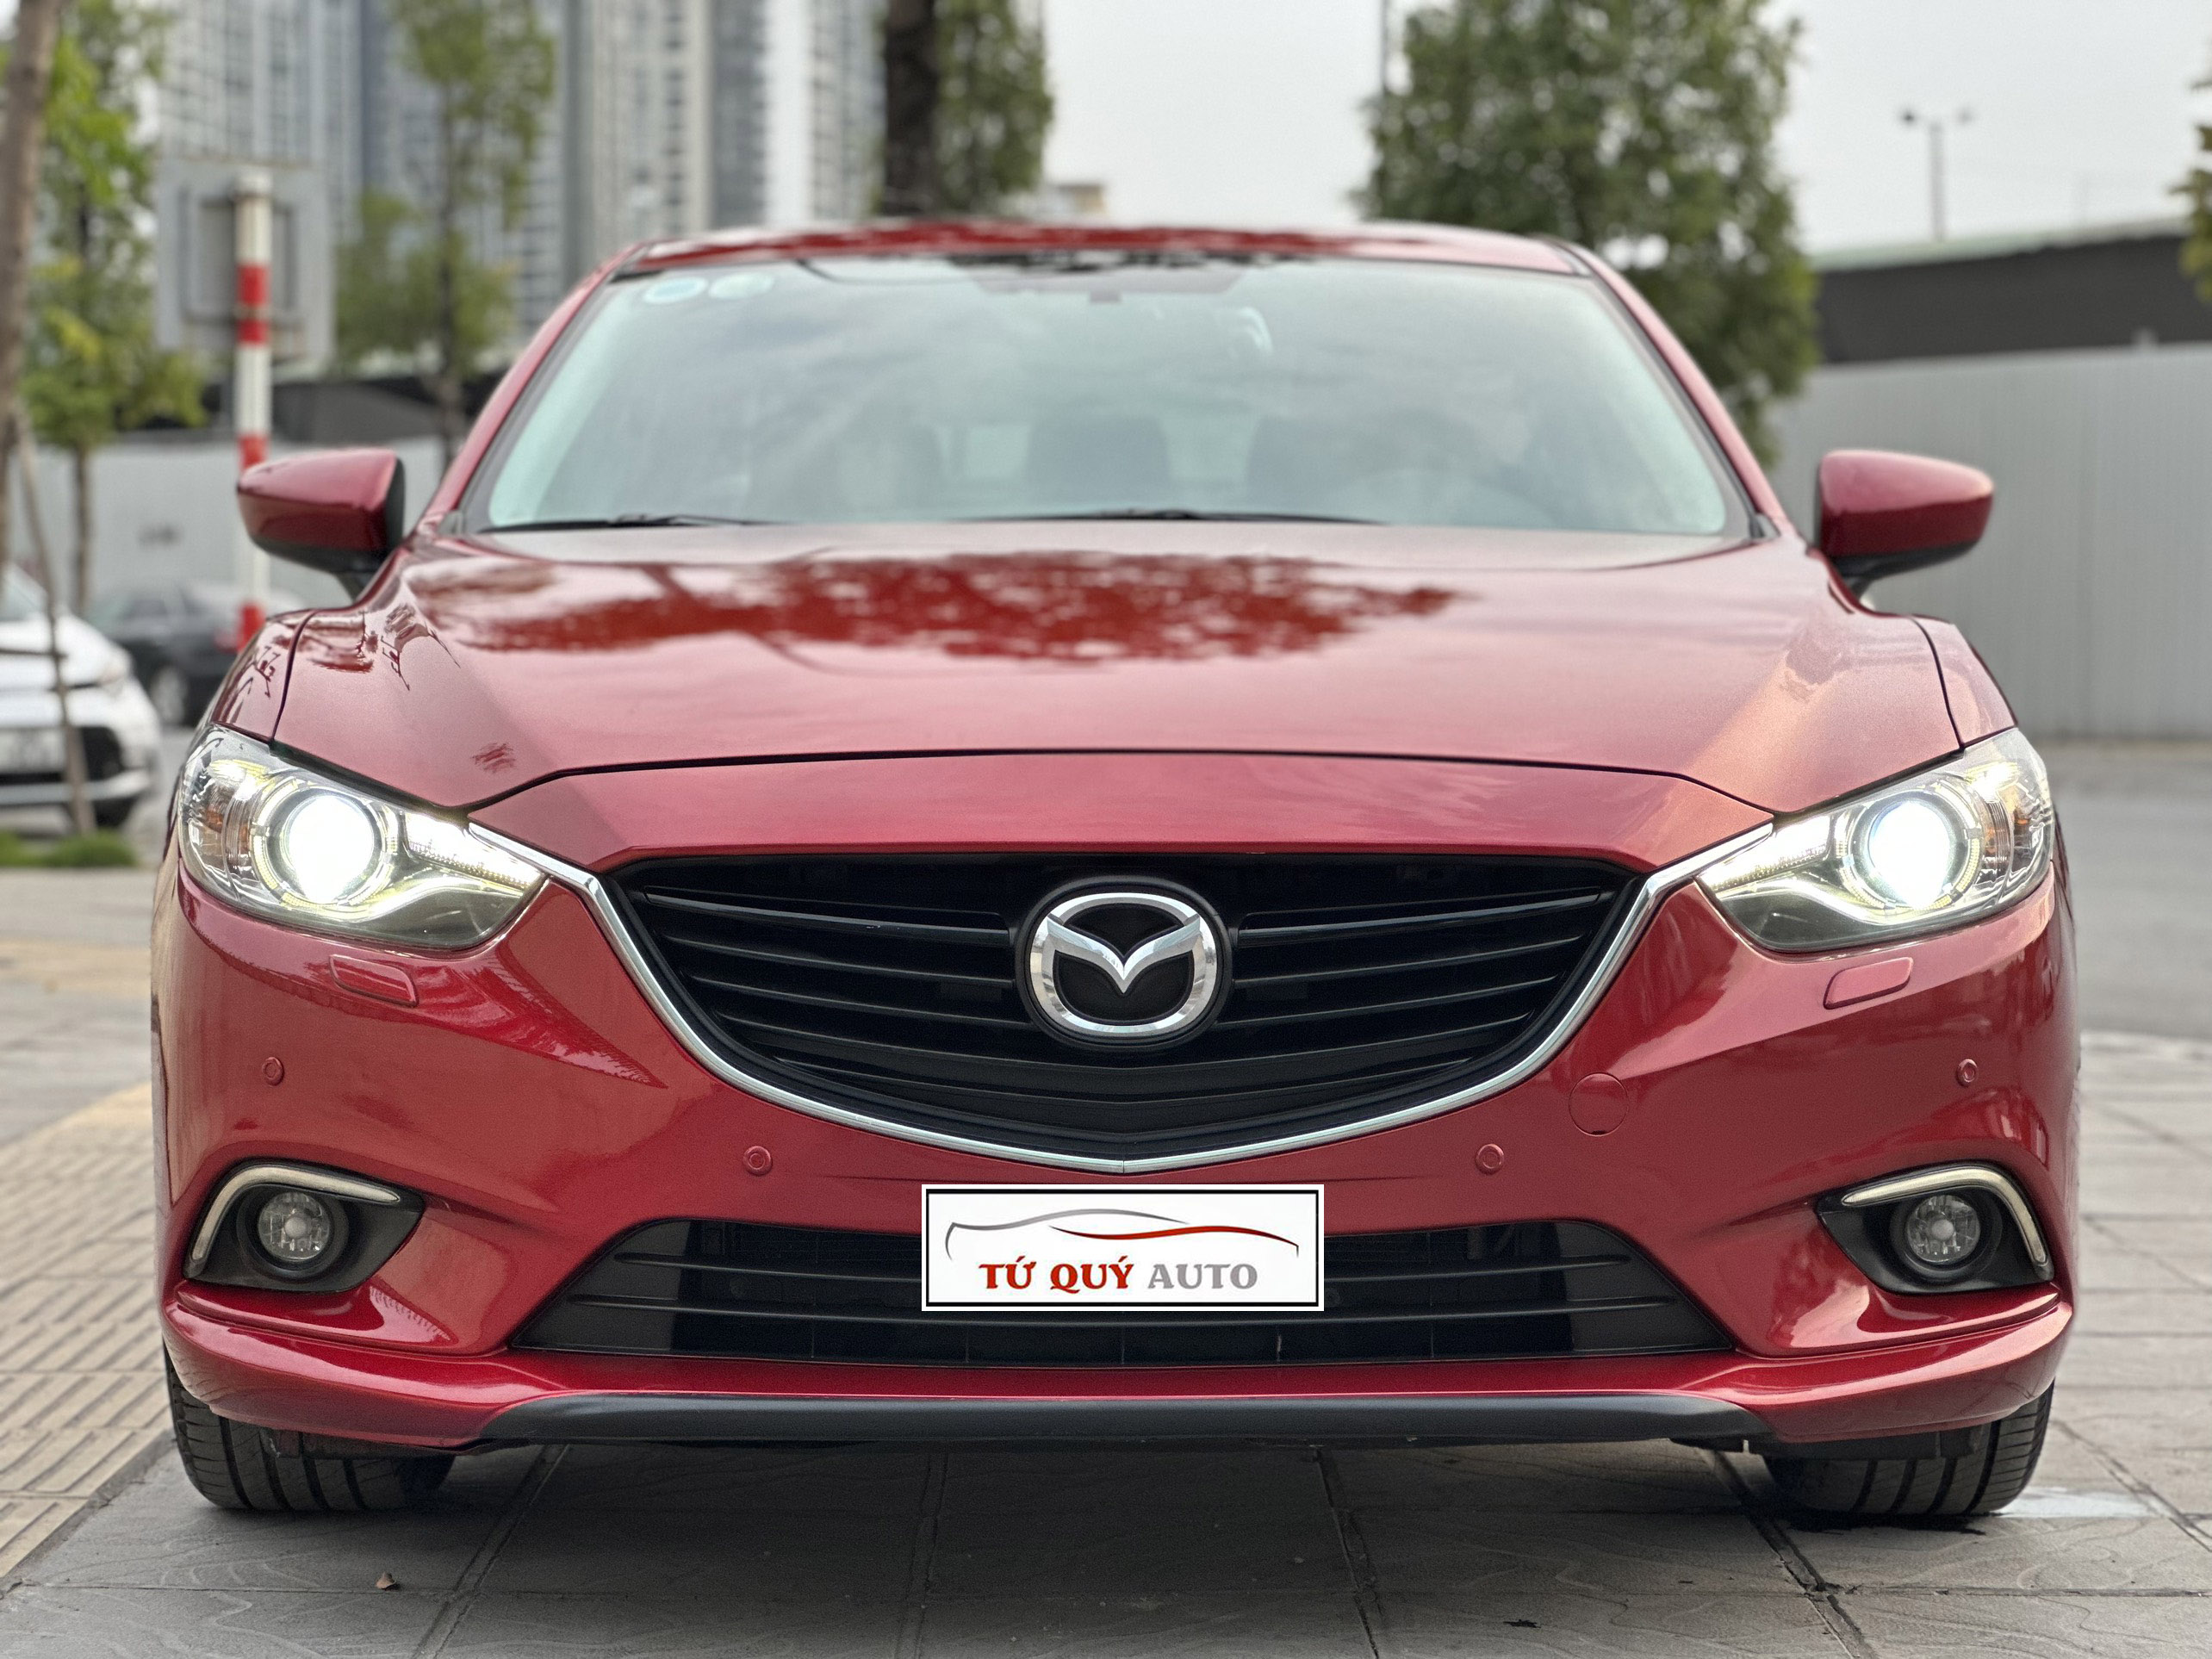 Hình ảnh và thông số kỹ thuật Mazda 6 Facelift 2017 tại Việt Nam